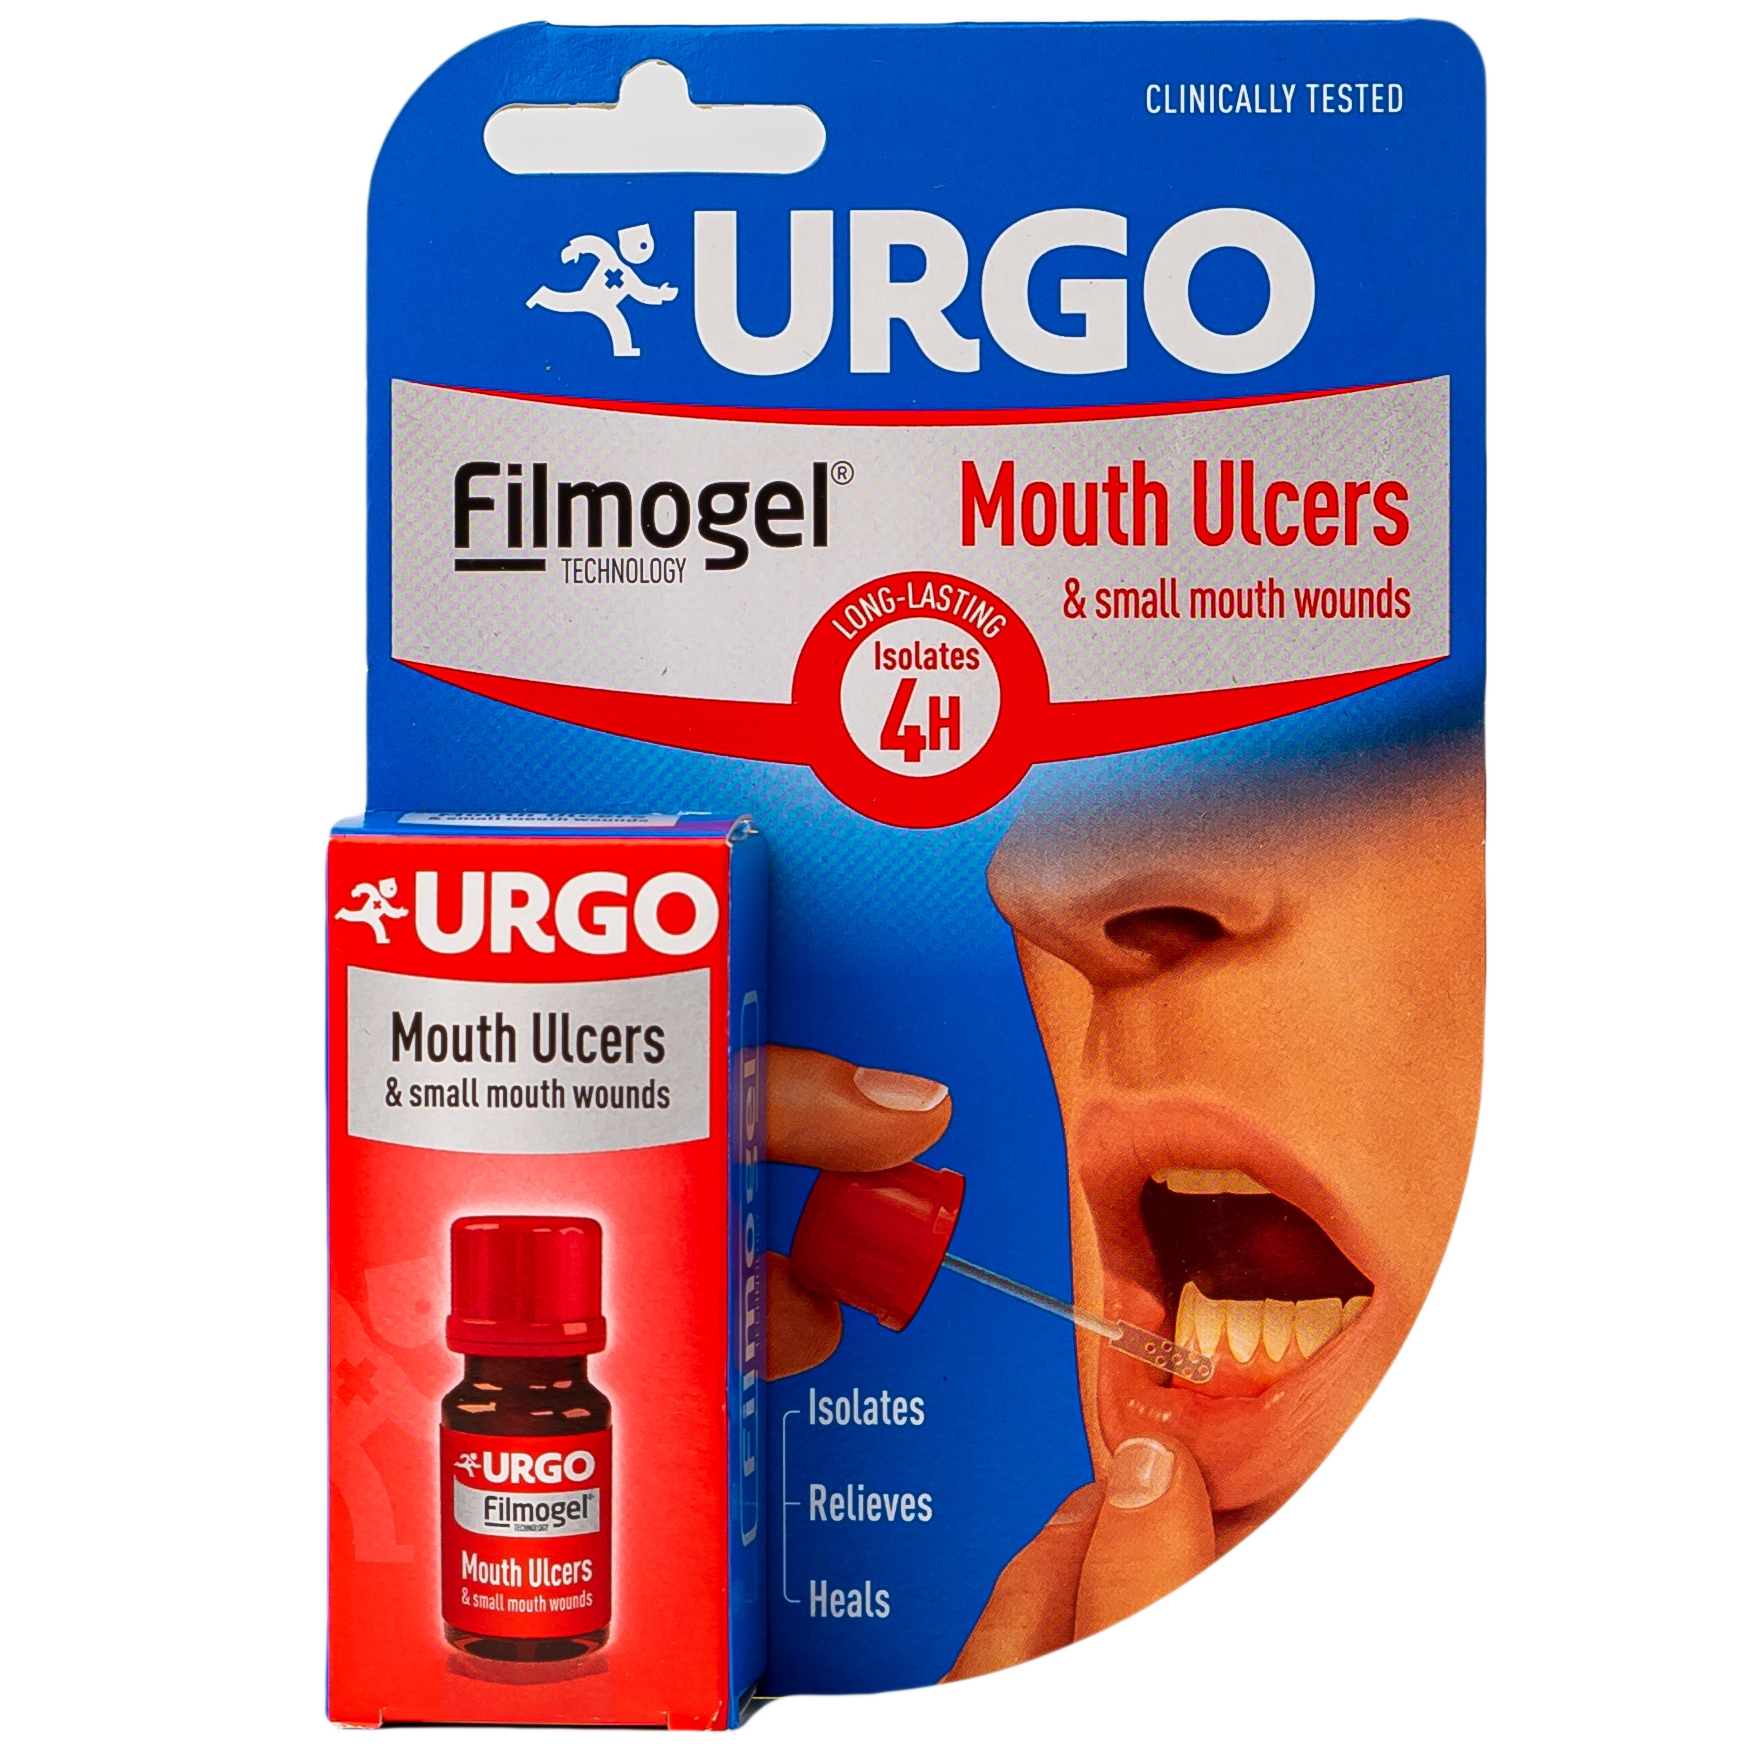  Urgo trị nhiệt miệng - Bí quyết giảm đau và làm dịu nhiệt miệng